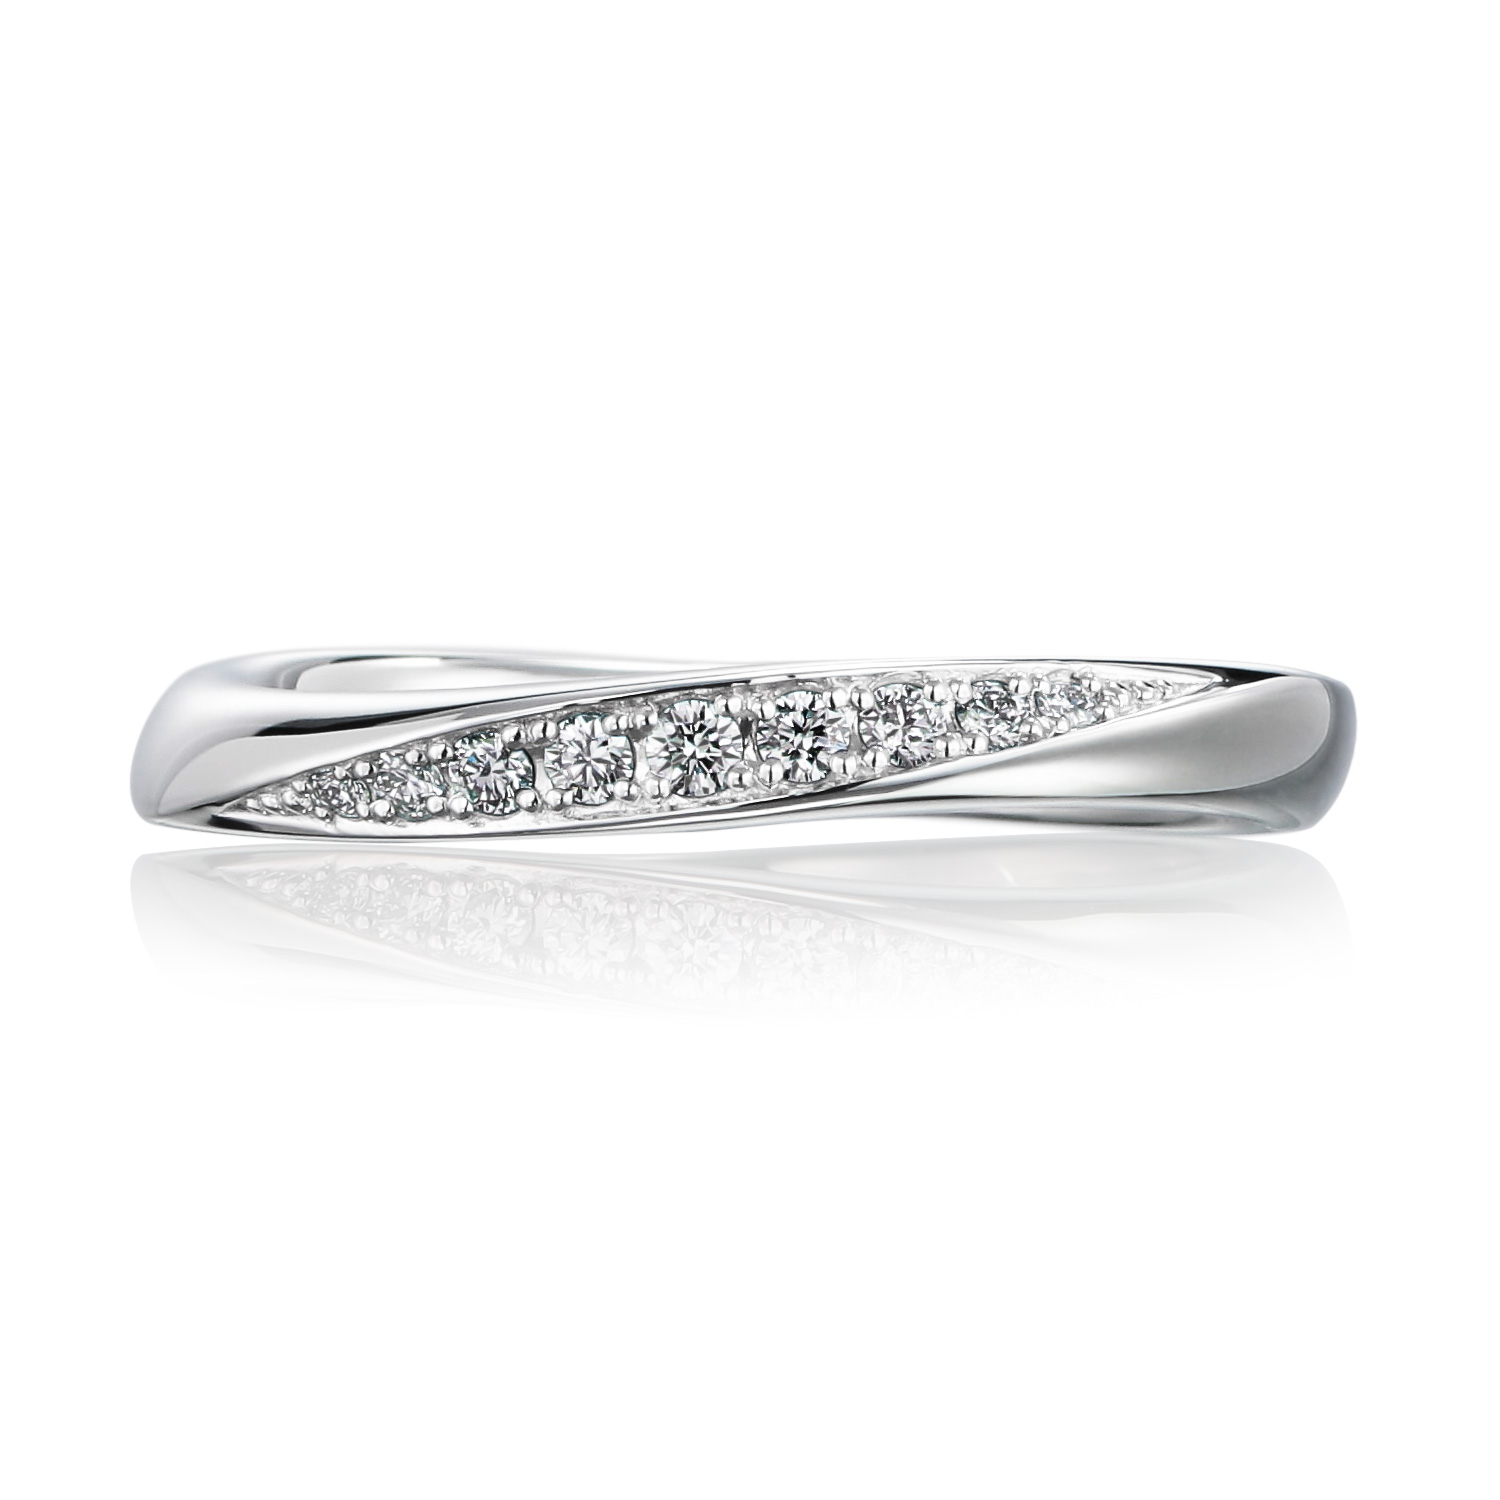 結婚指輪no3 2 5 ダイヤモンド プラチナ 幅2 5mm Pt950 ウェーブ 波模様 結婚指輪の通販 山梨 甲府のジュエリーブランドizuru